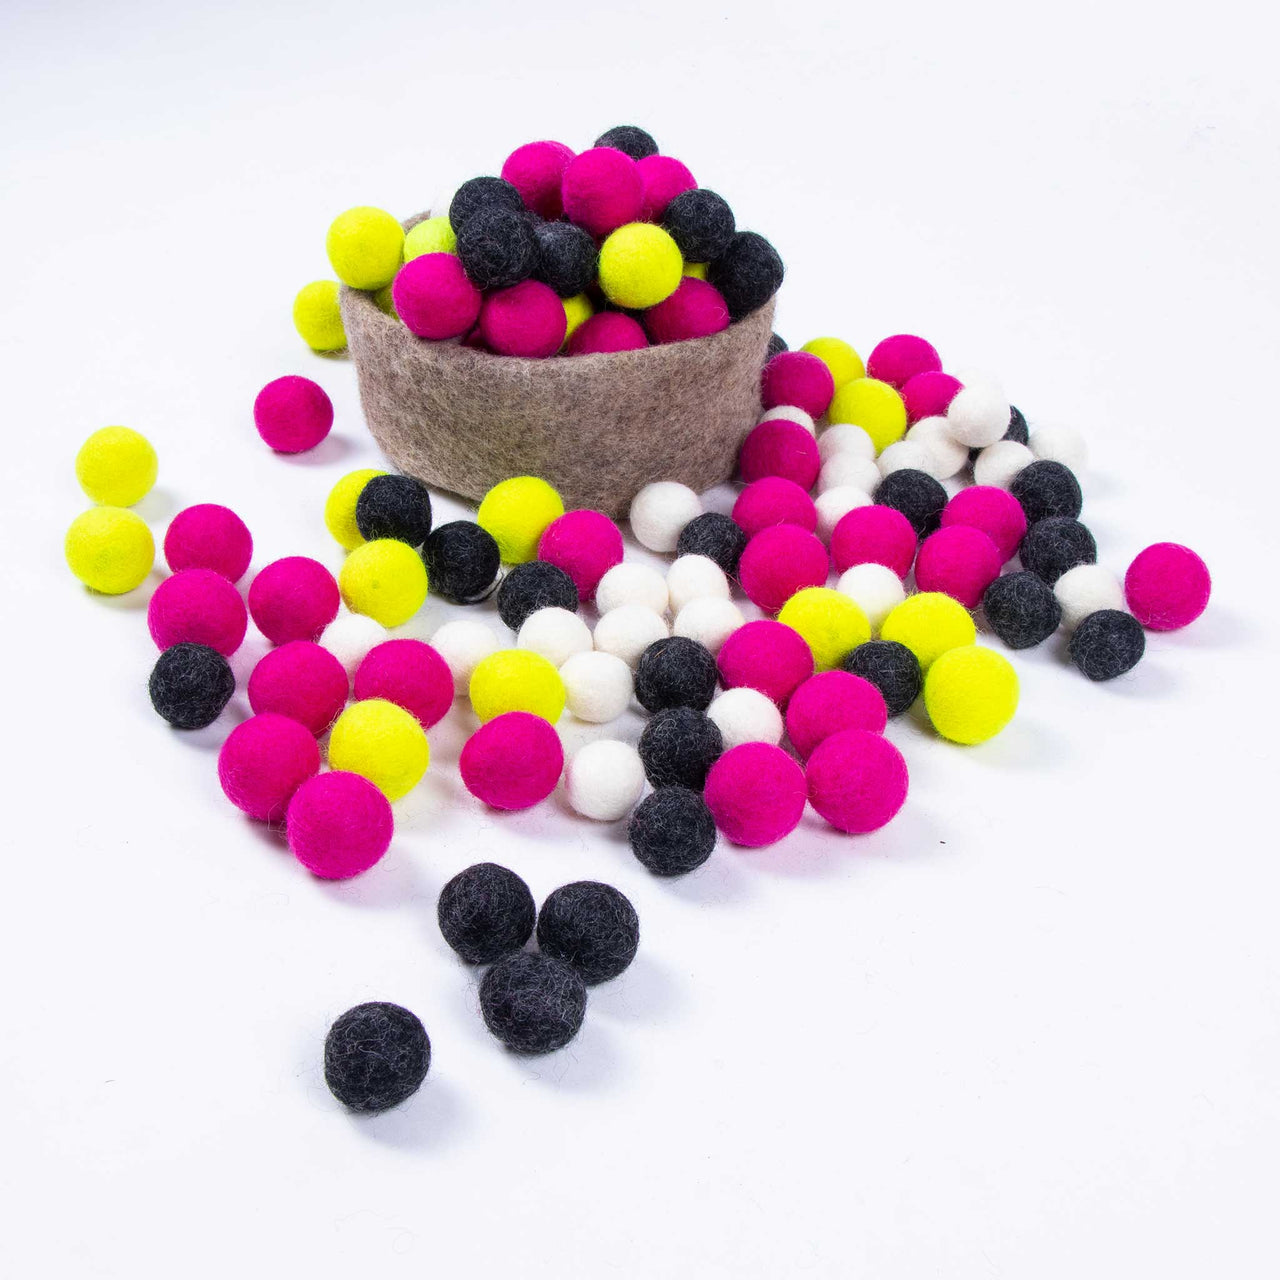 2 cm Multicolor Felt Balls Wholesale